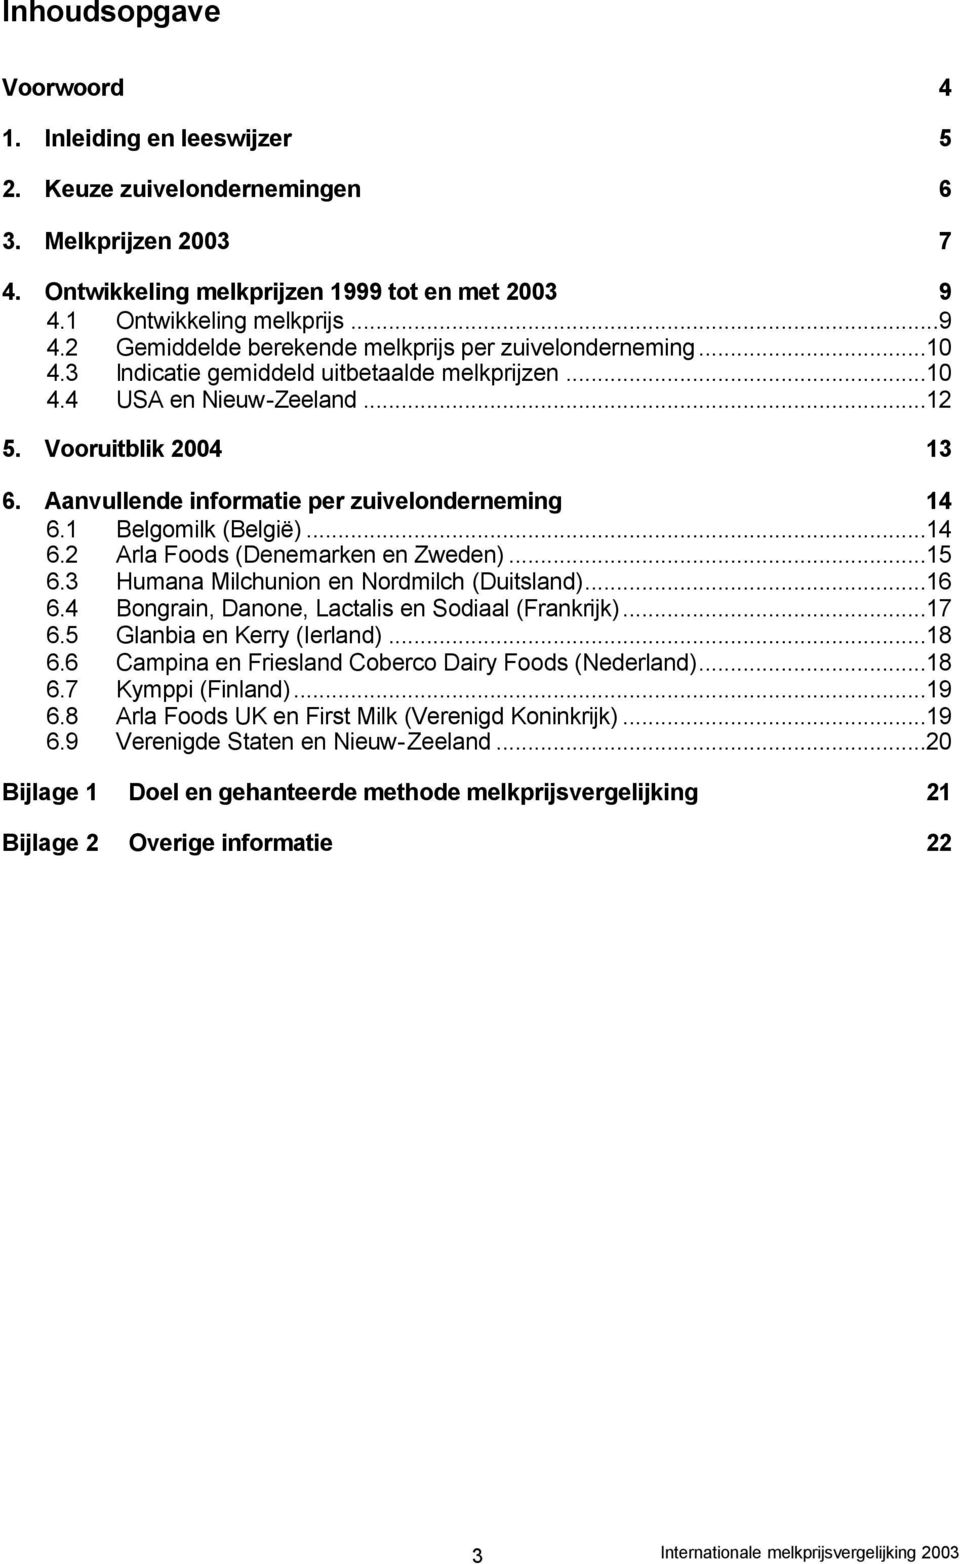 Aanvullende informatie per zuivelonderneming 14 6.1 Belgomilk (België)...14 6.2 Arla Foods (Denemarken en Zweden)...15 6.3 Humana Milchunion en Nordmilch (Duitsland)...16 6.